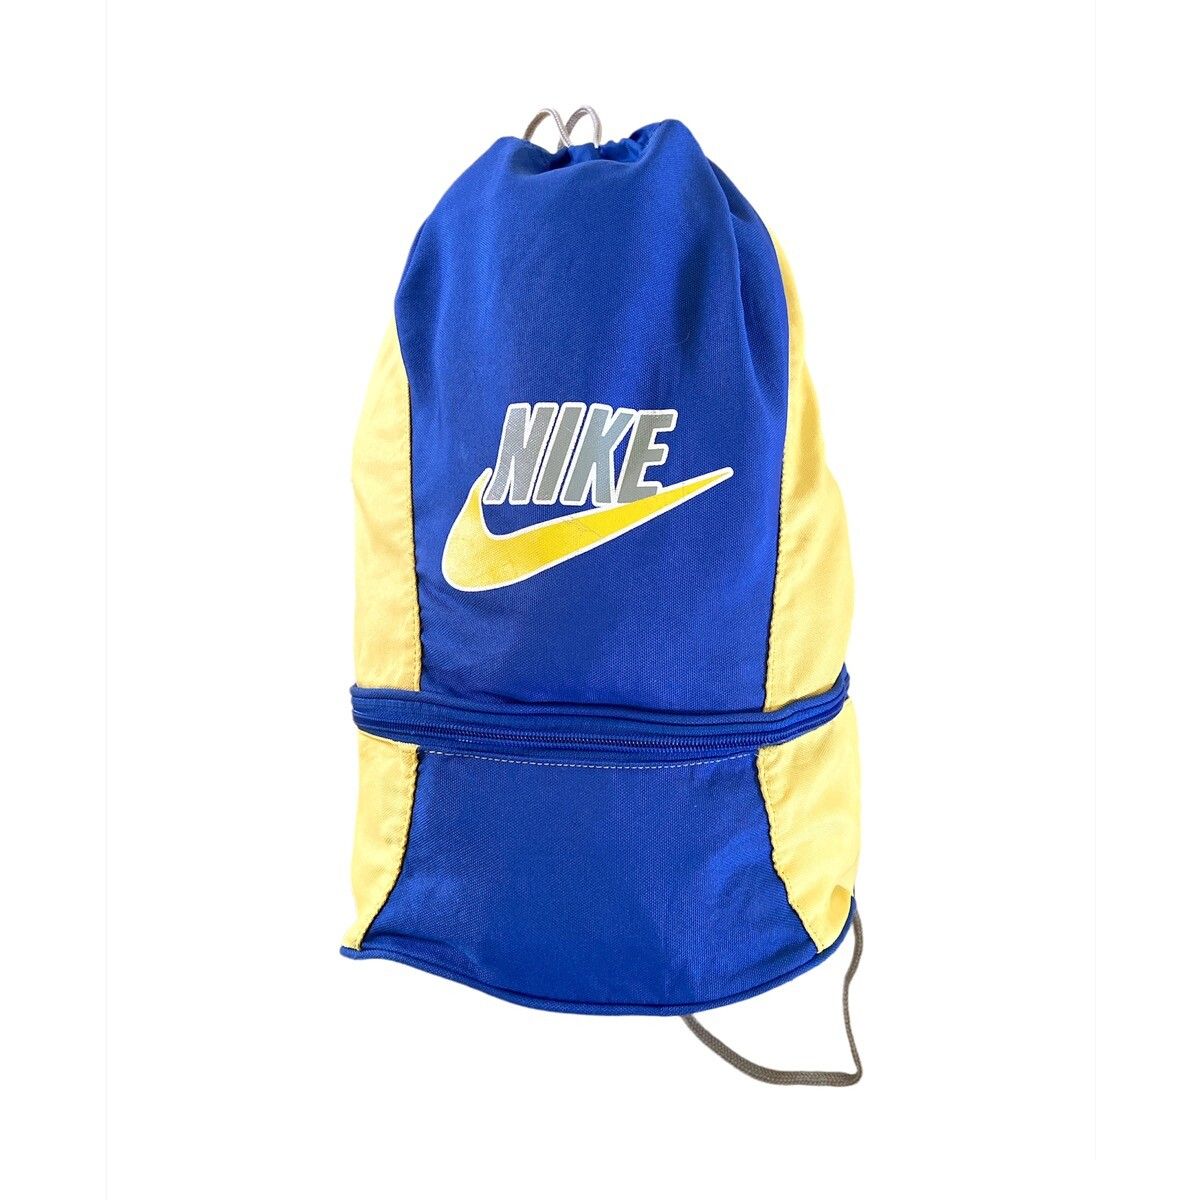 Vintage Nike Drawstring Bag - 1